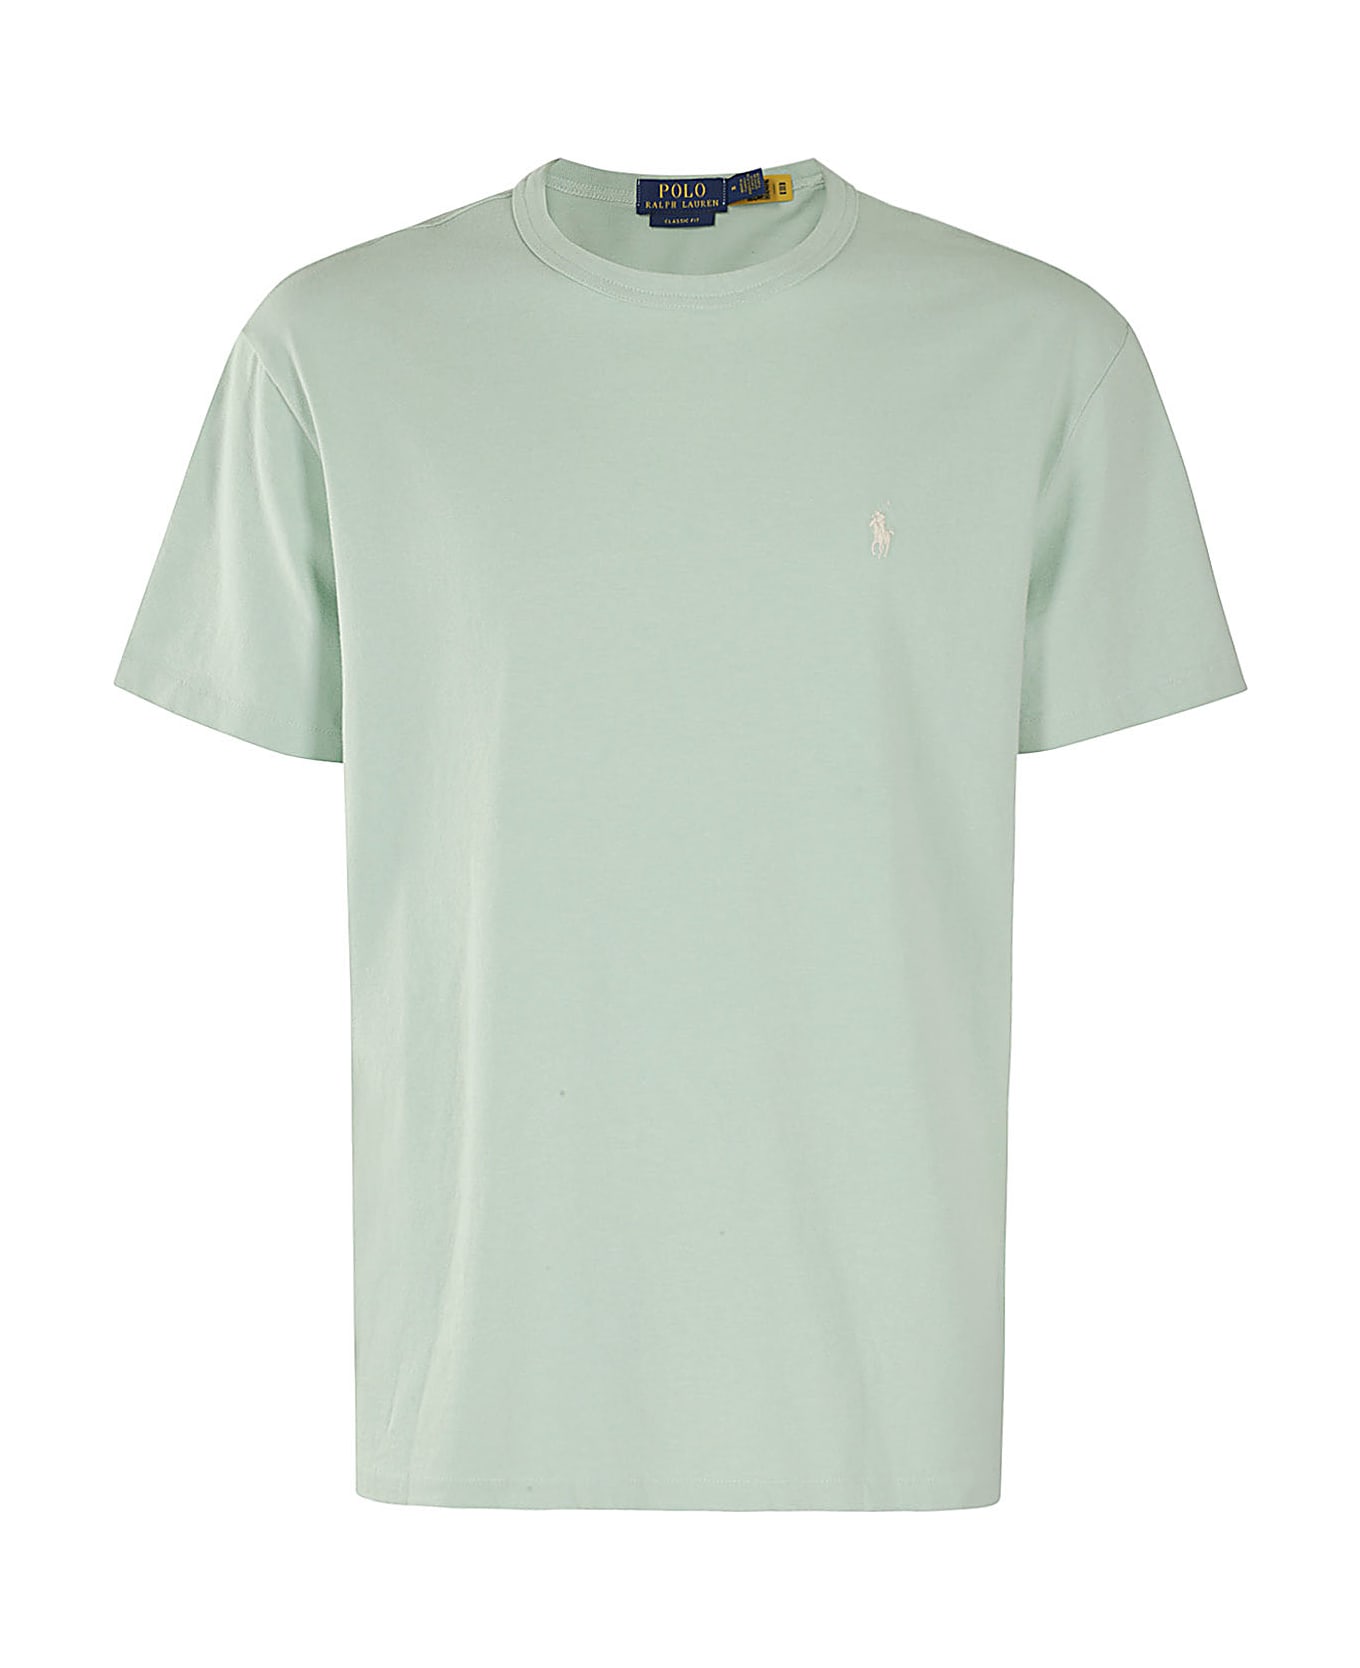 Polo Ralph Lauren Short Sleeve T Shirt - Caledon